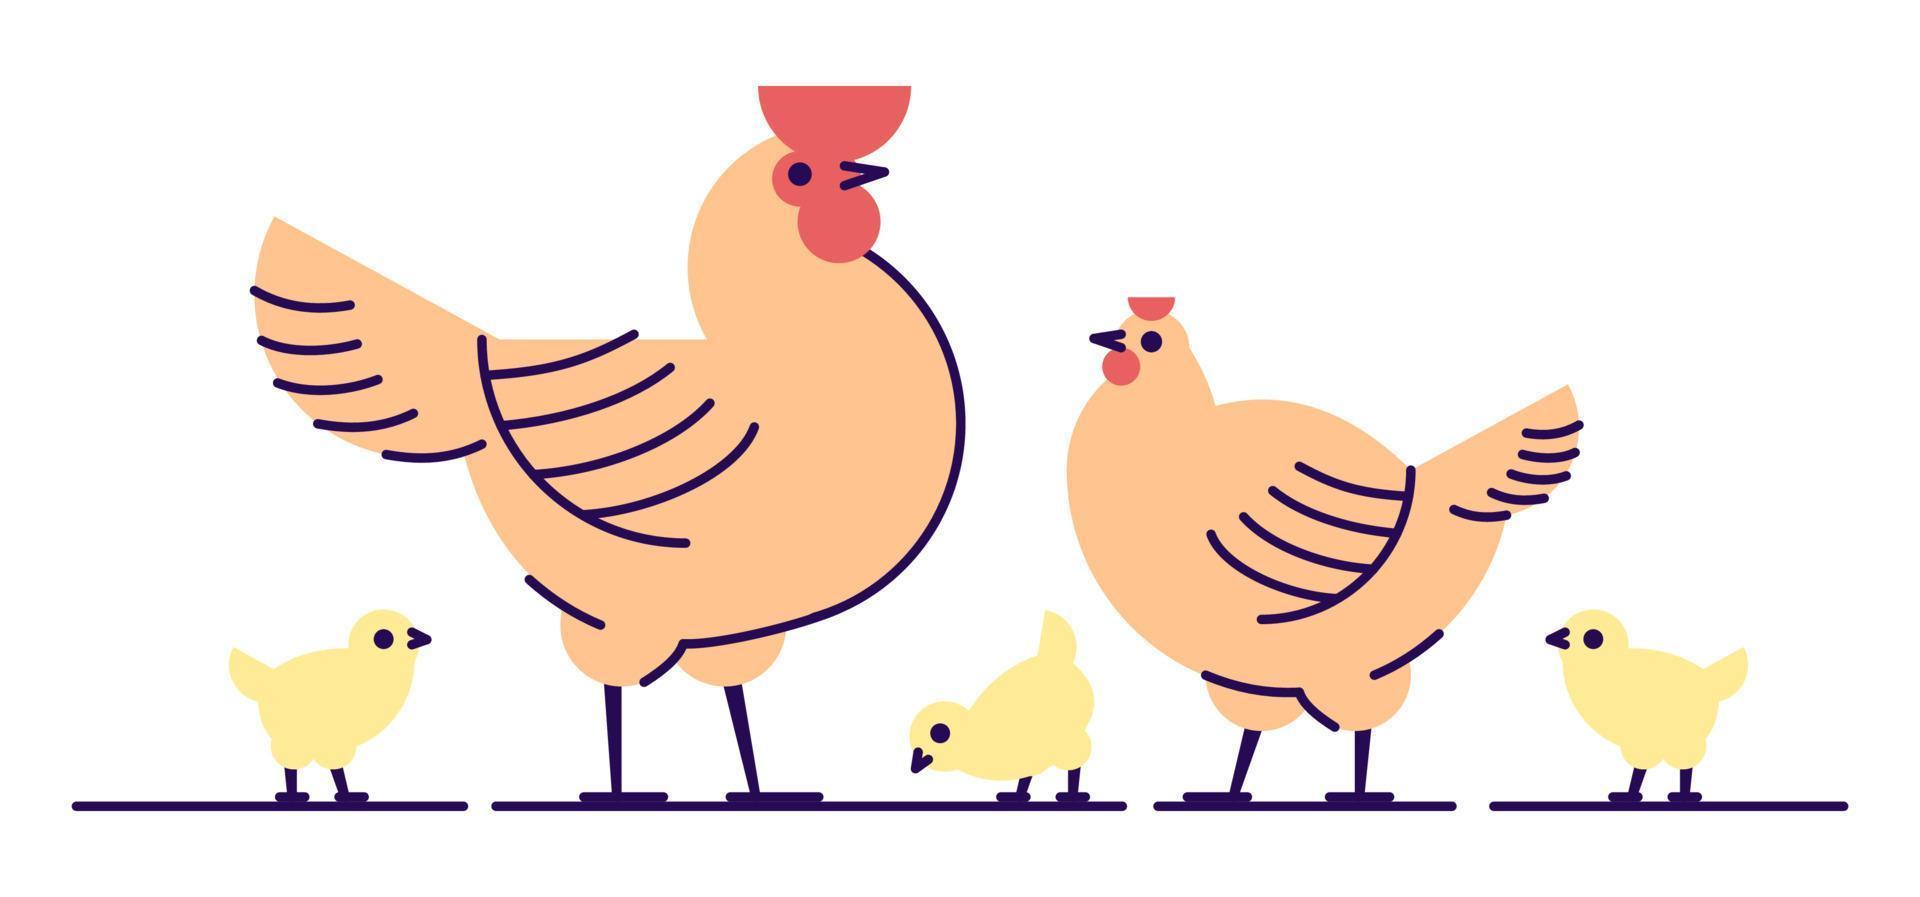 Hühnerfamilie flachbild Vector Illustration. isolierter orangefarbener Hahn, Henne und gelbe süße Küken. Hennery, Geflügelfarm, Vogelzucht-Cartoon-Design-Elemente mit Umriss. Herstellung von Hühnerfleisch